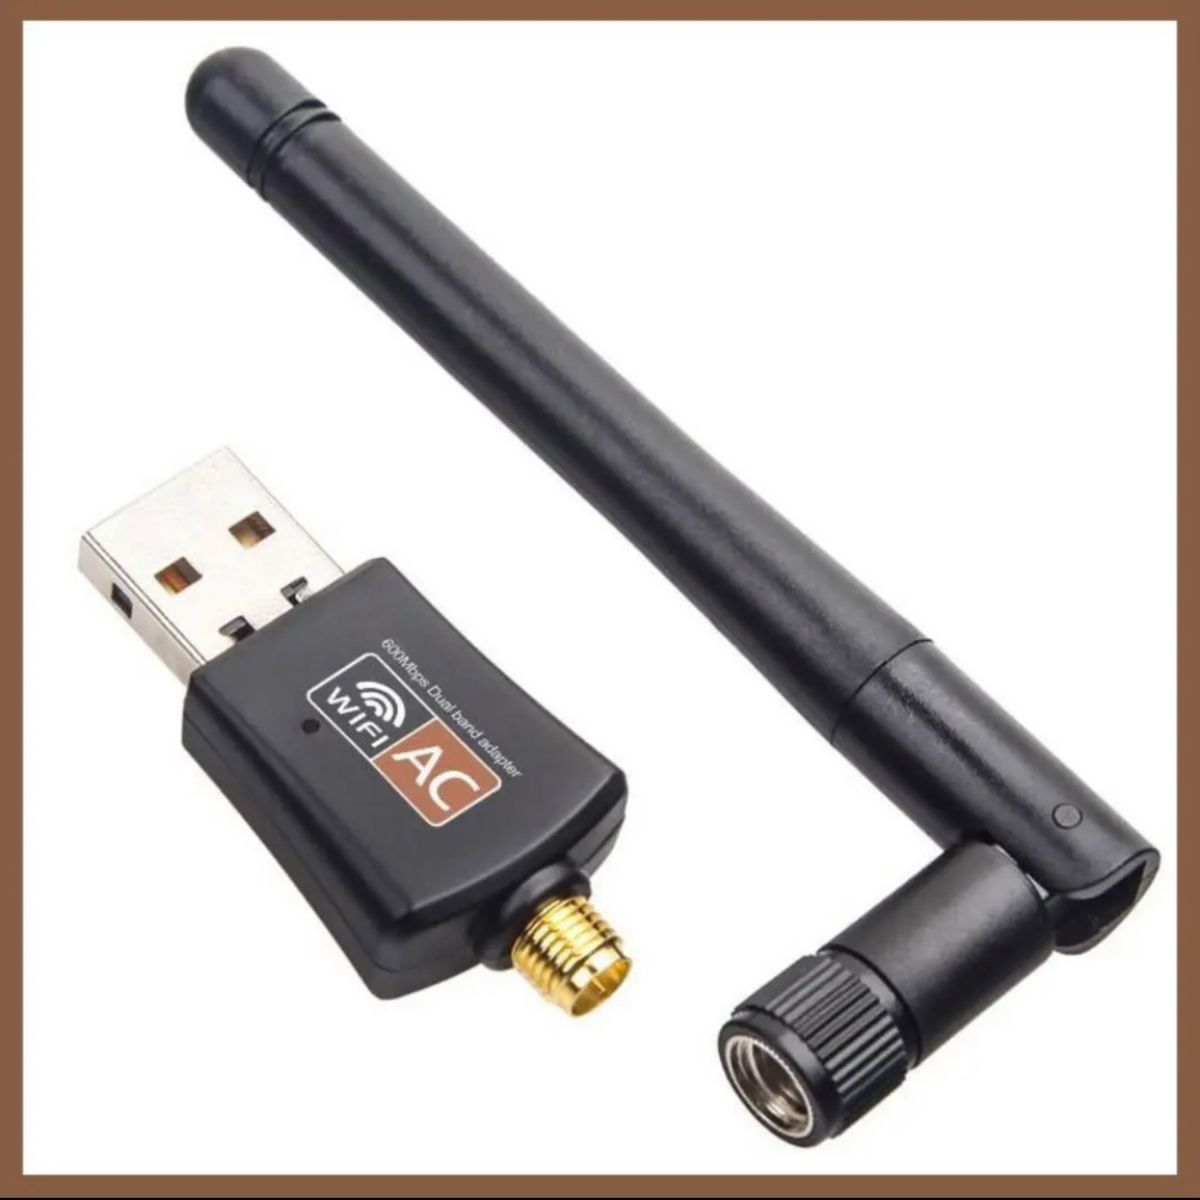 USB2.0 600Mbs WiFi 無線LAN アンテナ 5G 2.4G 新品